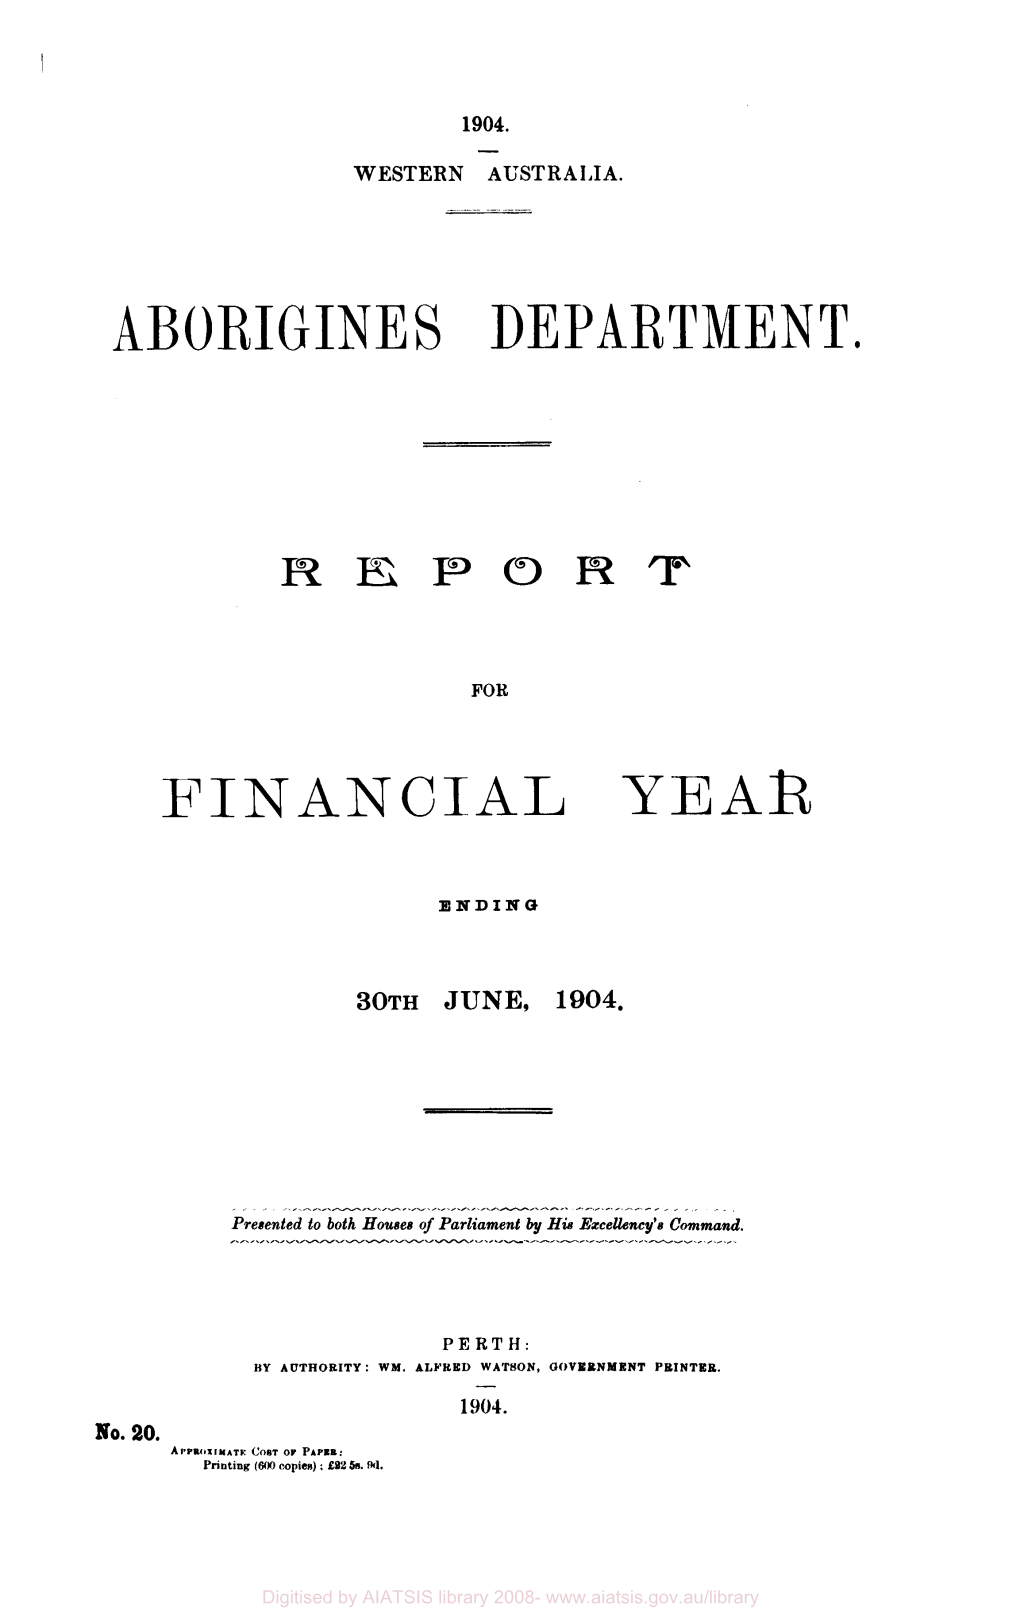 Aborigines Department